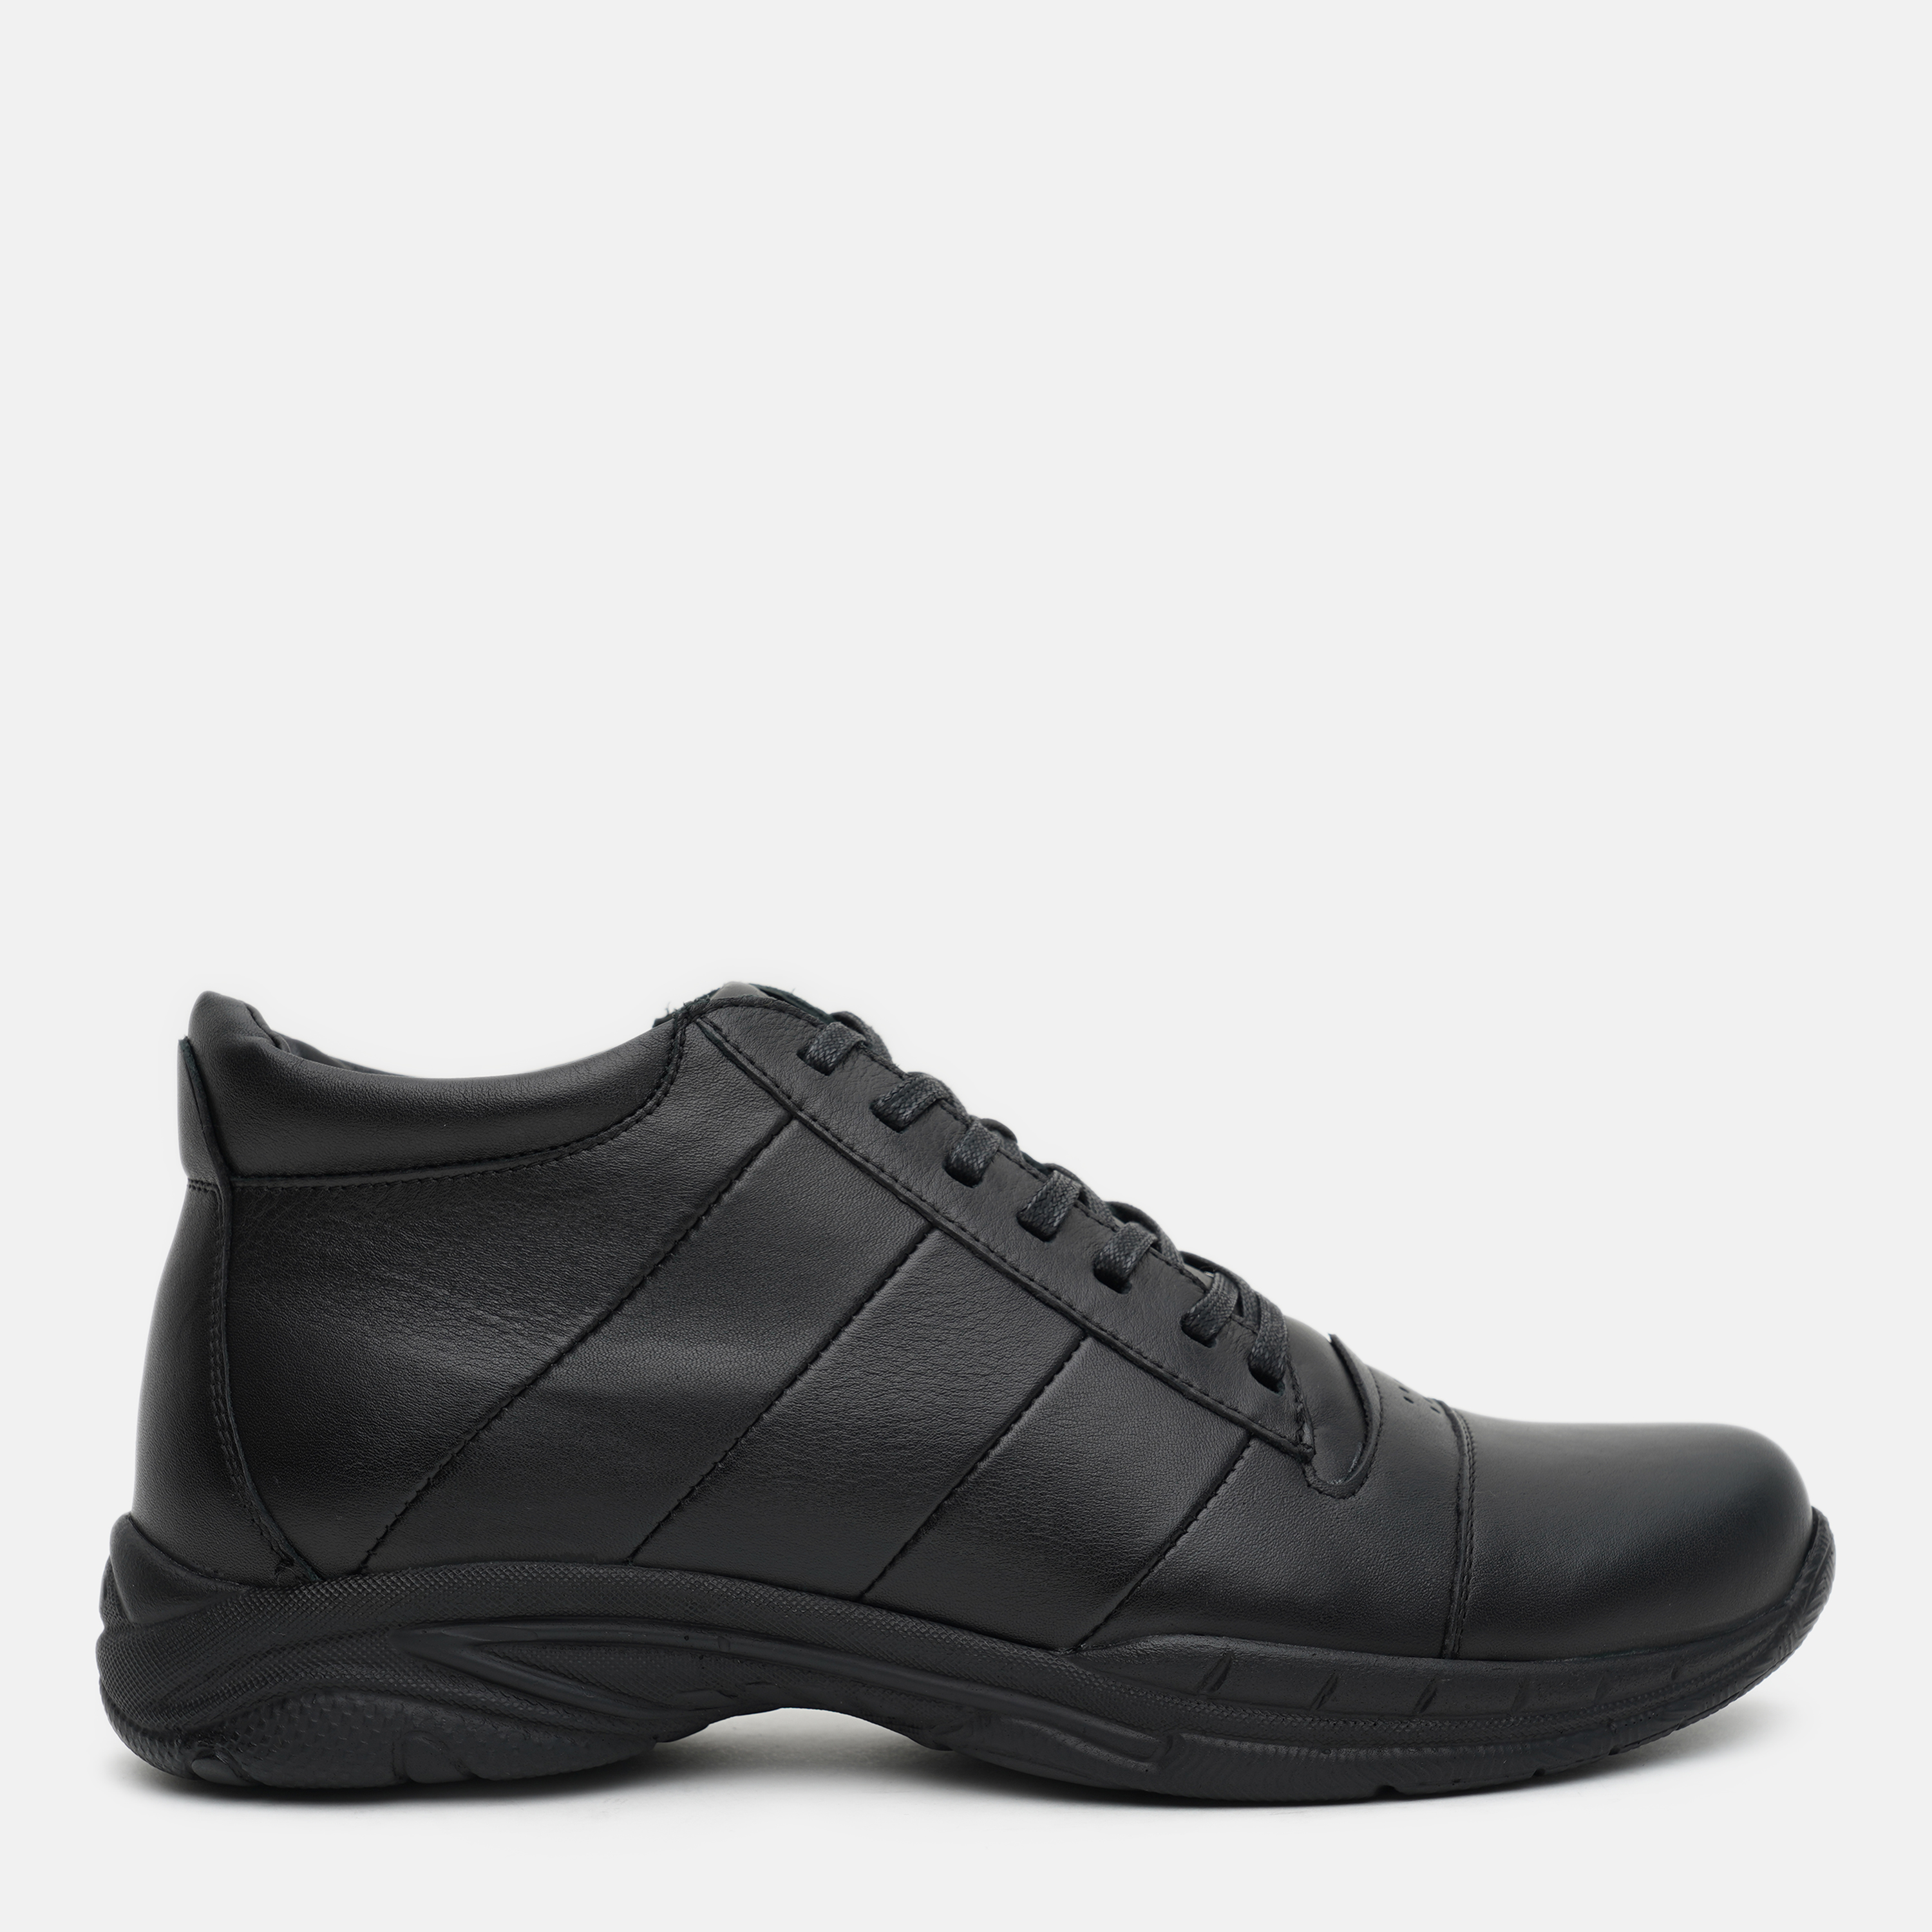 Ботинки Prime Shoes 665 Black Leather 16-665-30117 45 29.5 см Черные